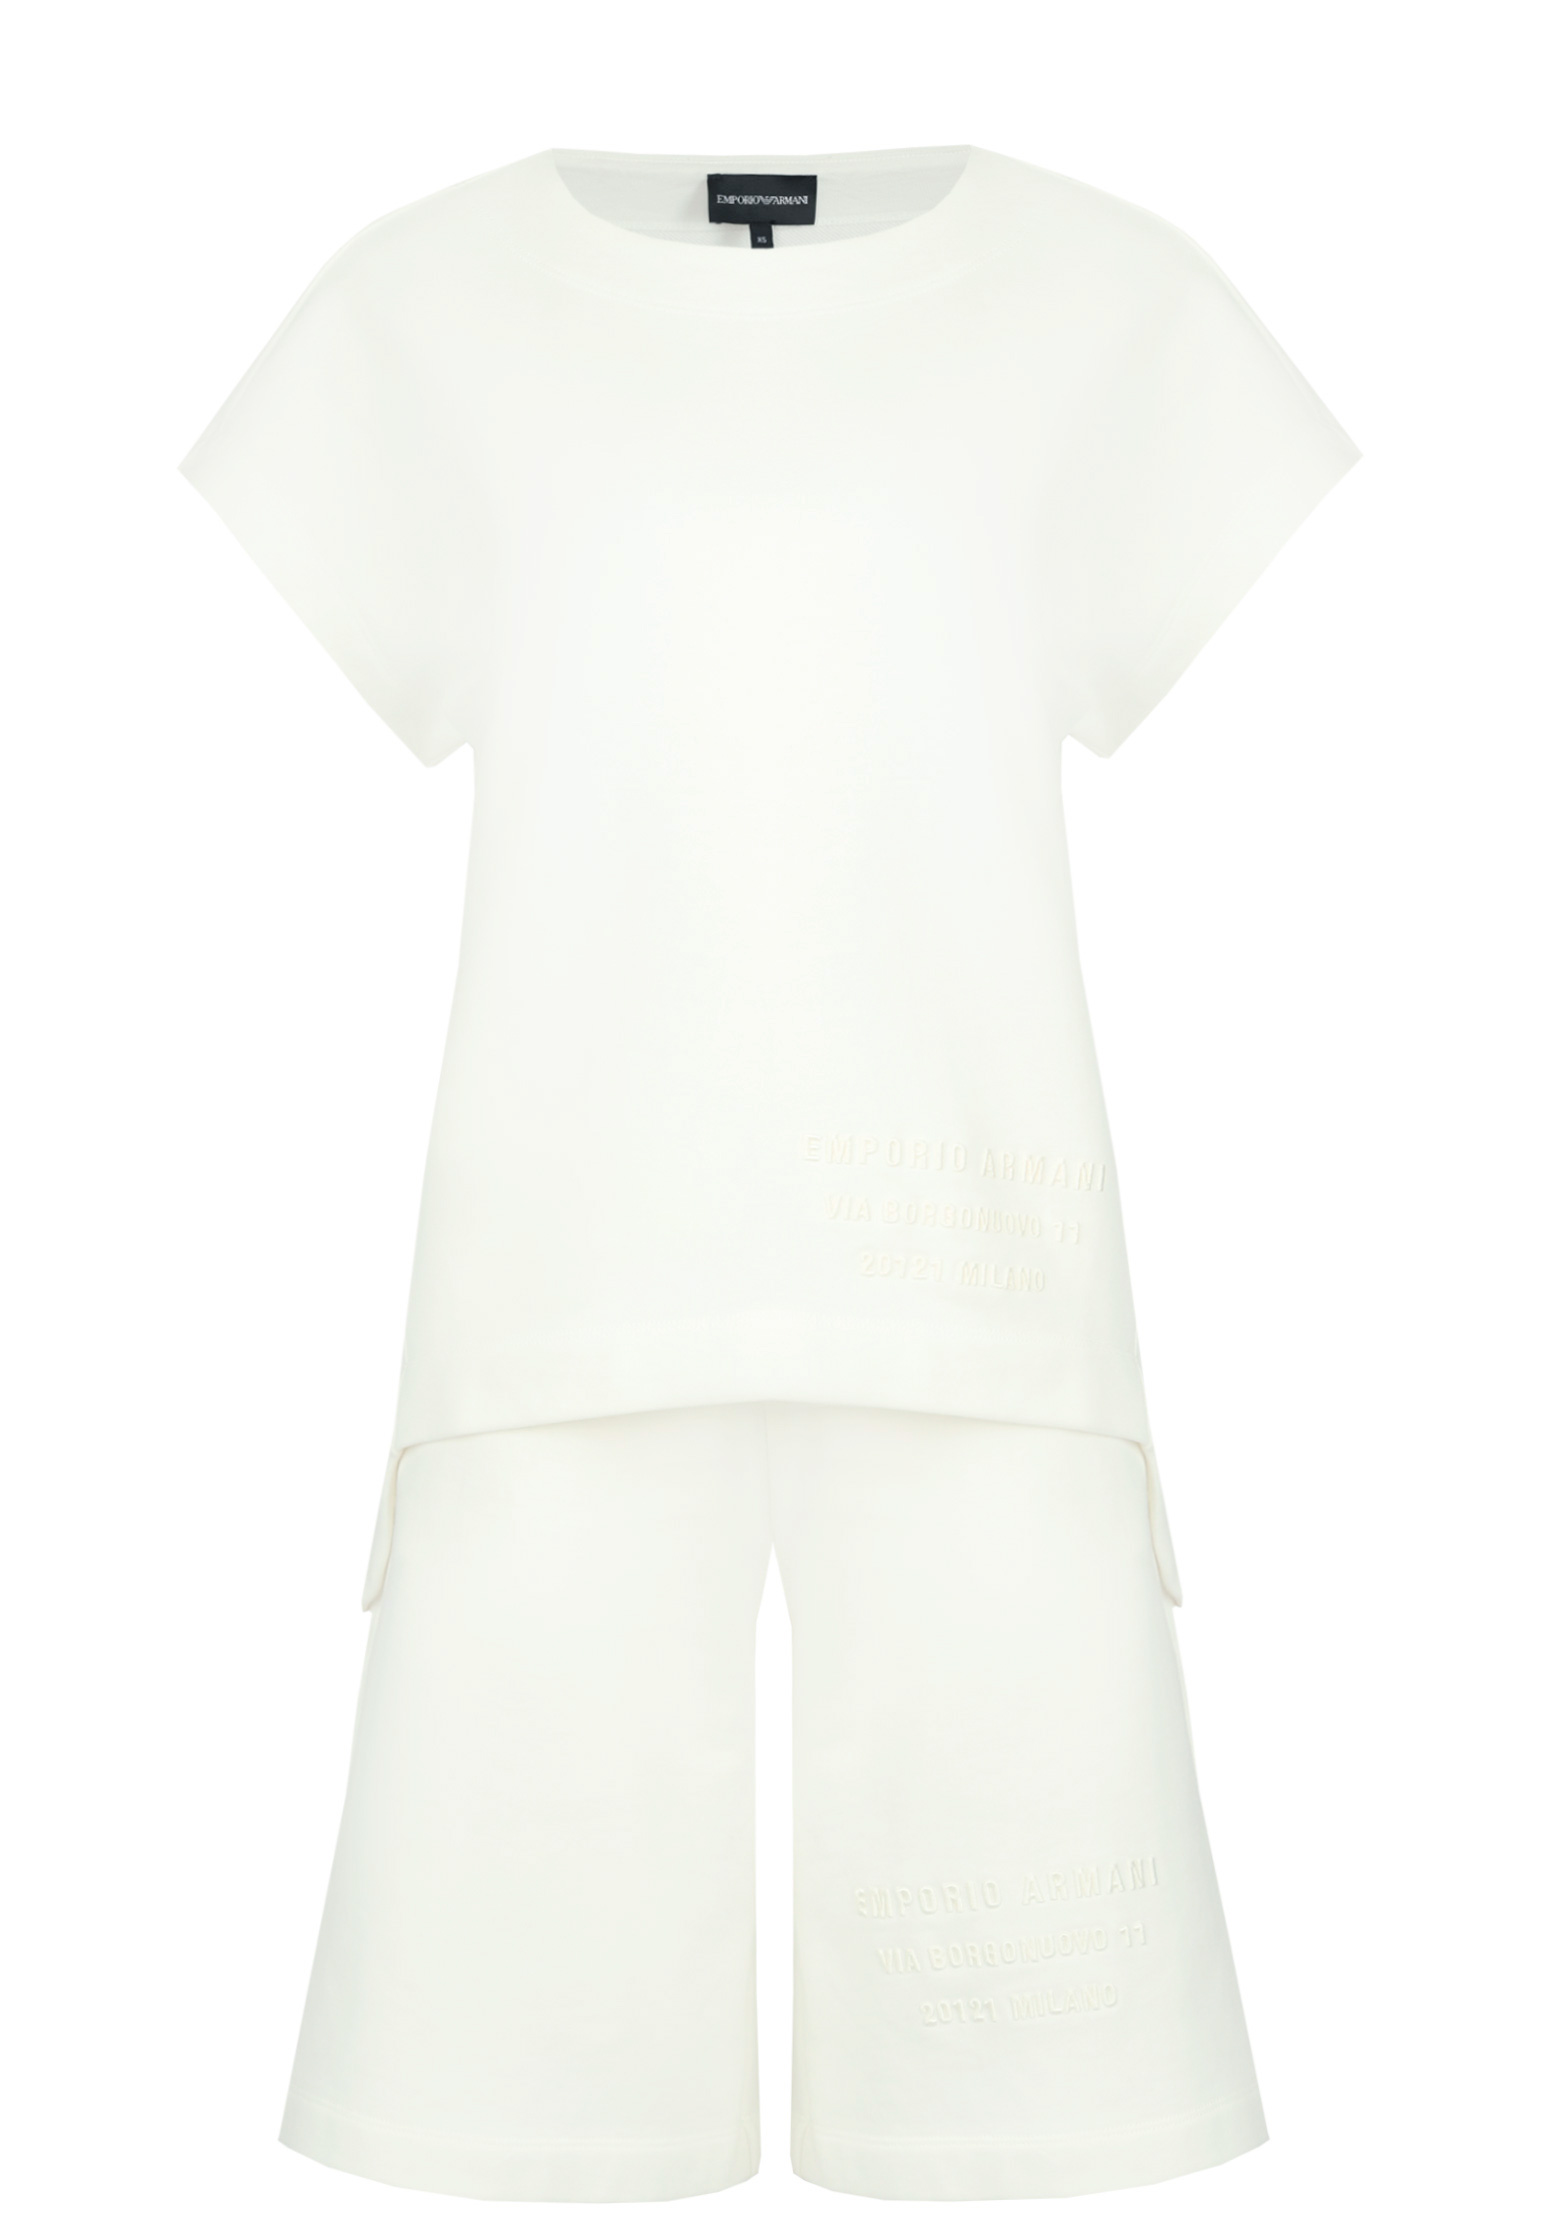 Спортивный костюм EMPORIO ARMANI Белый, размер XS 155041 - фото 1